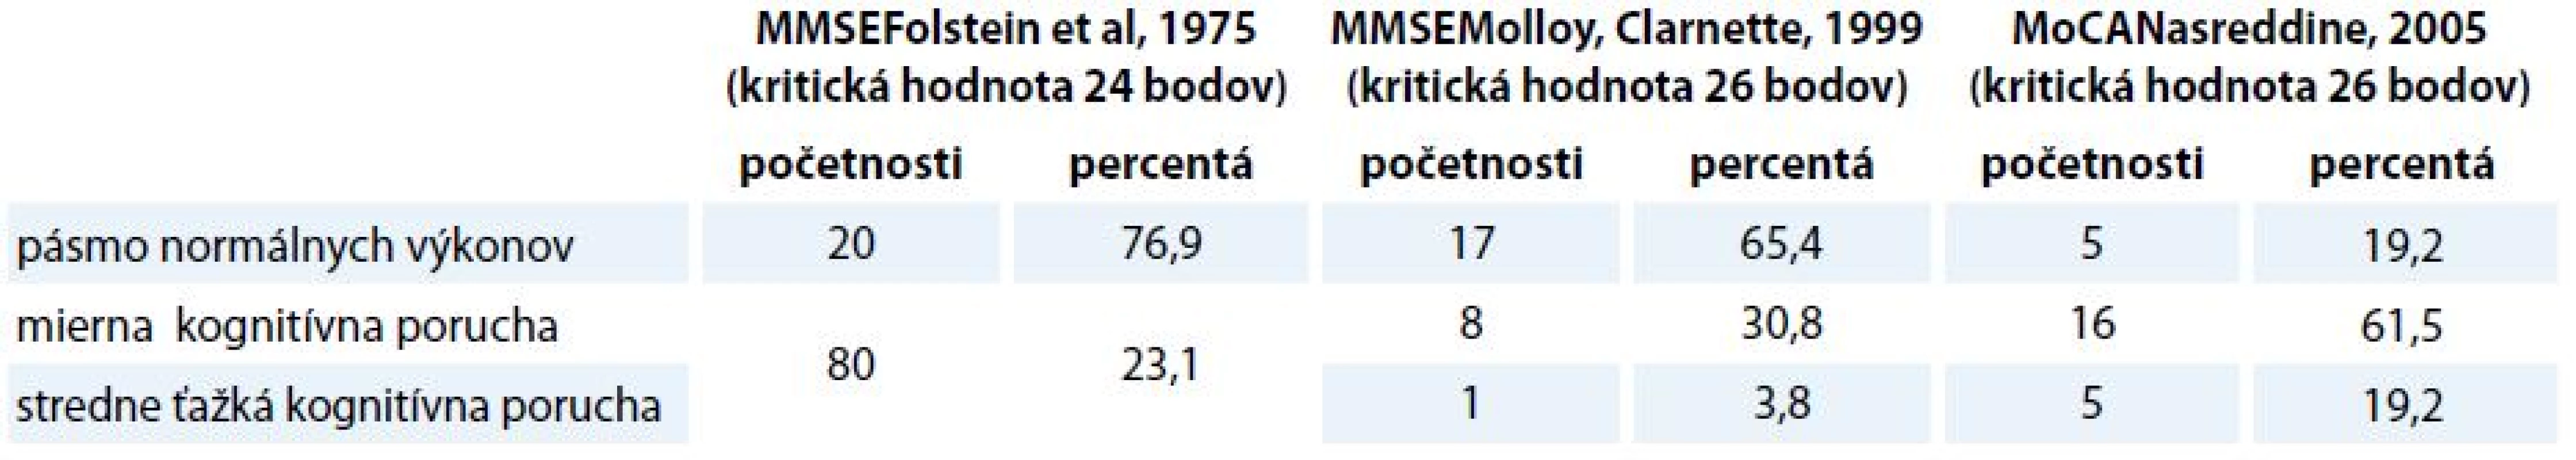 Distribúcia participantov podľa výsledného skóre v MMSE a MoCA [27,28,35].